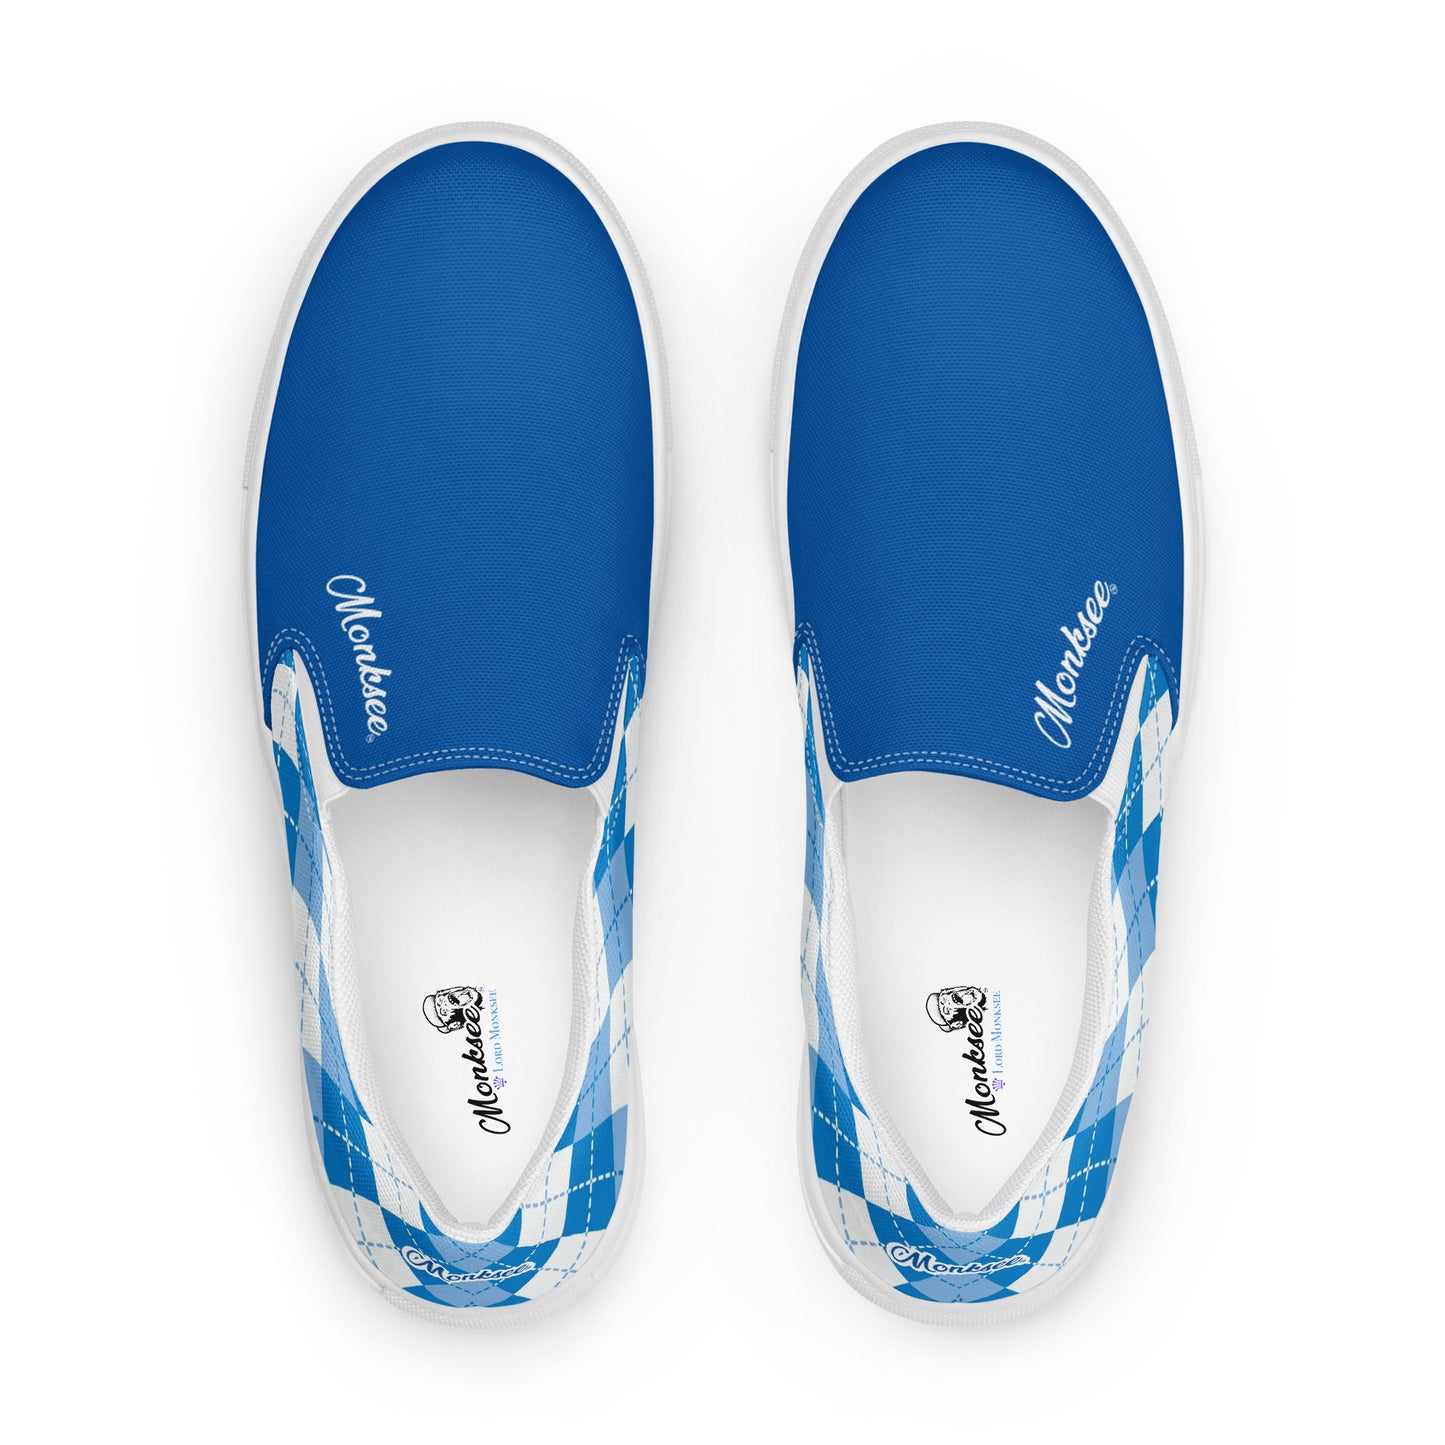 Lord Monksee - Argyle Men's shoe (blue).